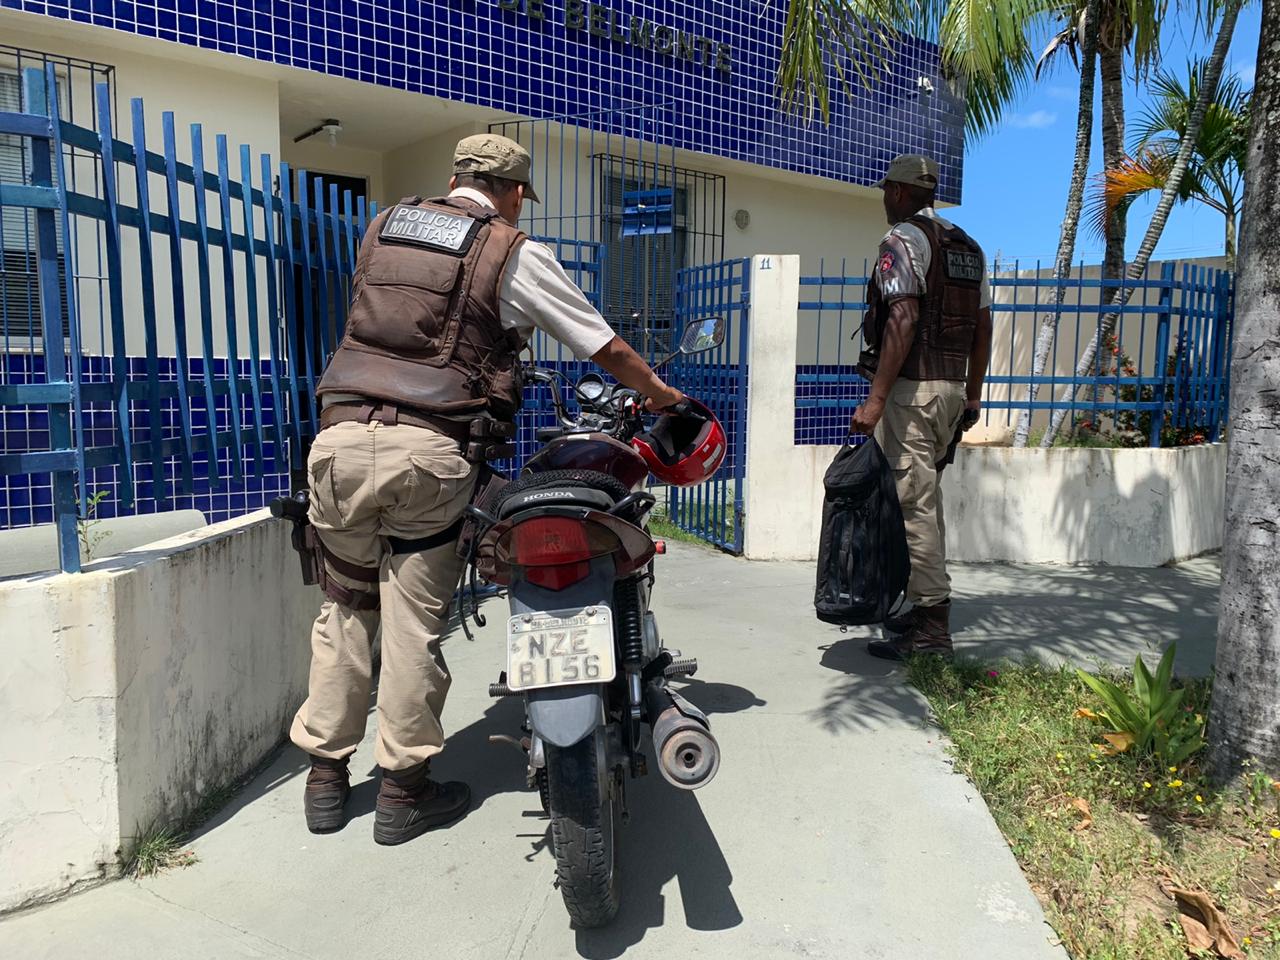 PM recupera motocicleta e itens furtados em residência arrombada em Belmonte, Acusado consegue escapar.